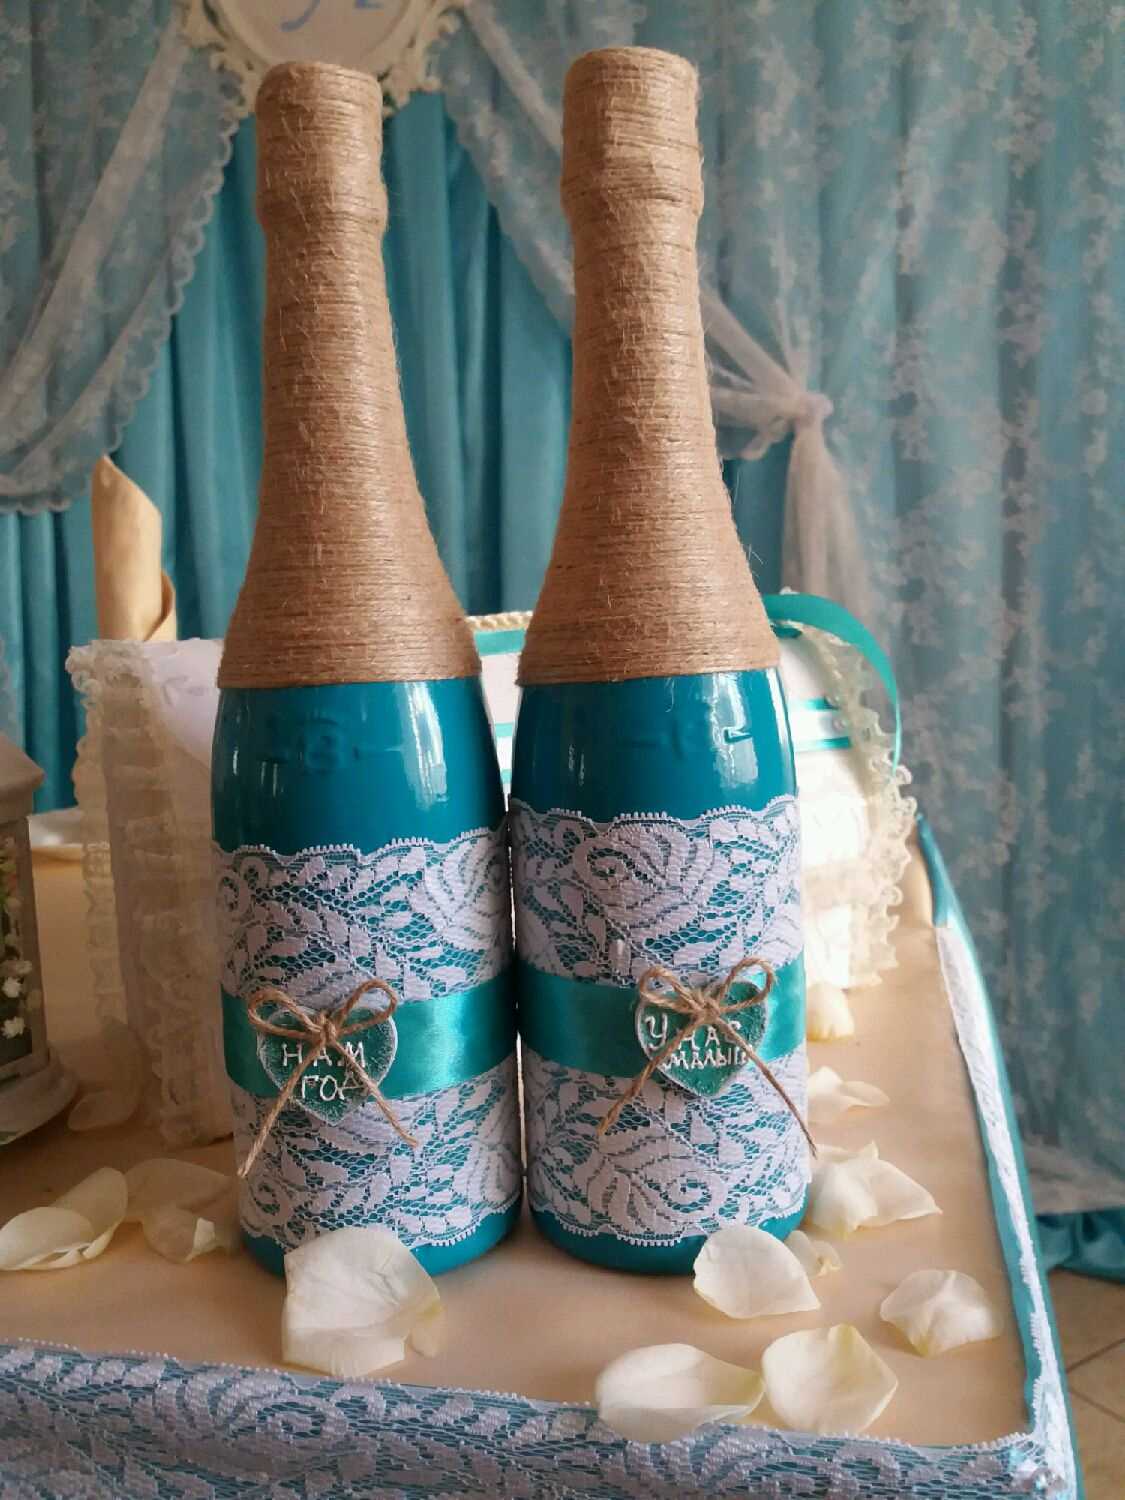 فكرة تصميم جميل لزجاجات الشمبانيا مع خيوط